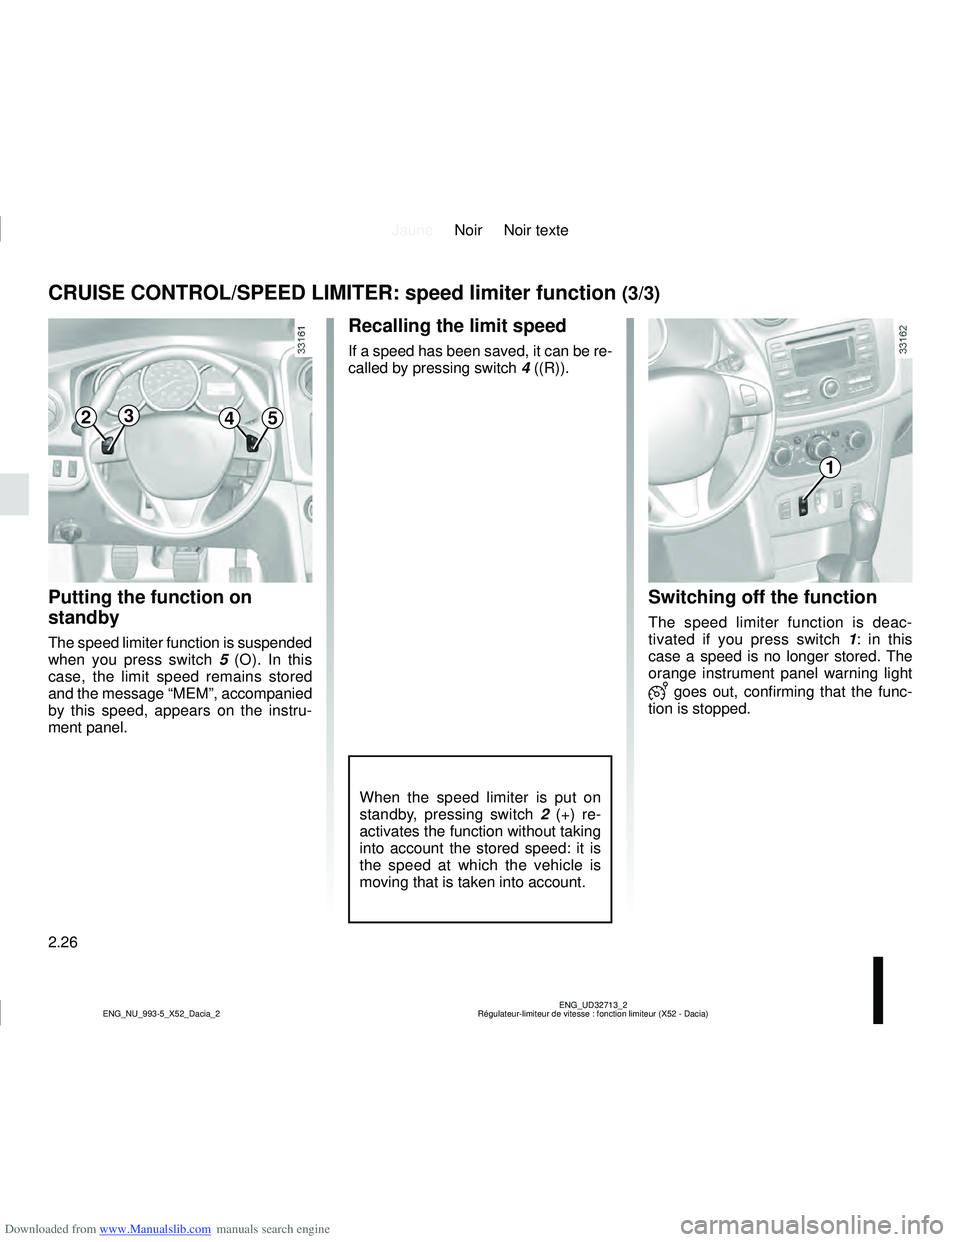 DACIA LOGAN 2014 Owners Guide Downloaded from www.Manualslib.com manuals search engine JauneNoir Noir texte
2.26
ENG_UD32713_2
Régulateur-limiteur de vitesse : fonction limiteur (X52 - Dacia)
ENG_NU_993-5_X52_Dacia_2
CRUISE CONTR